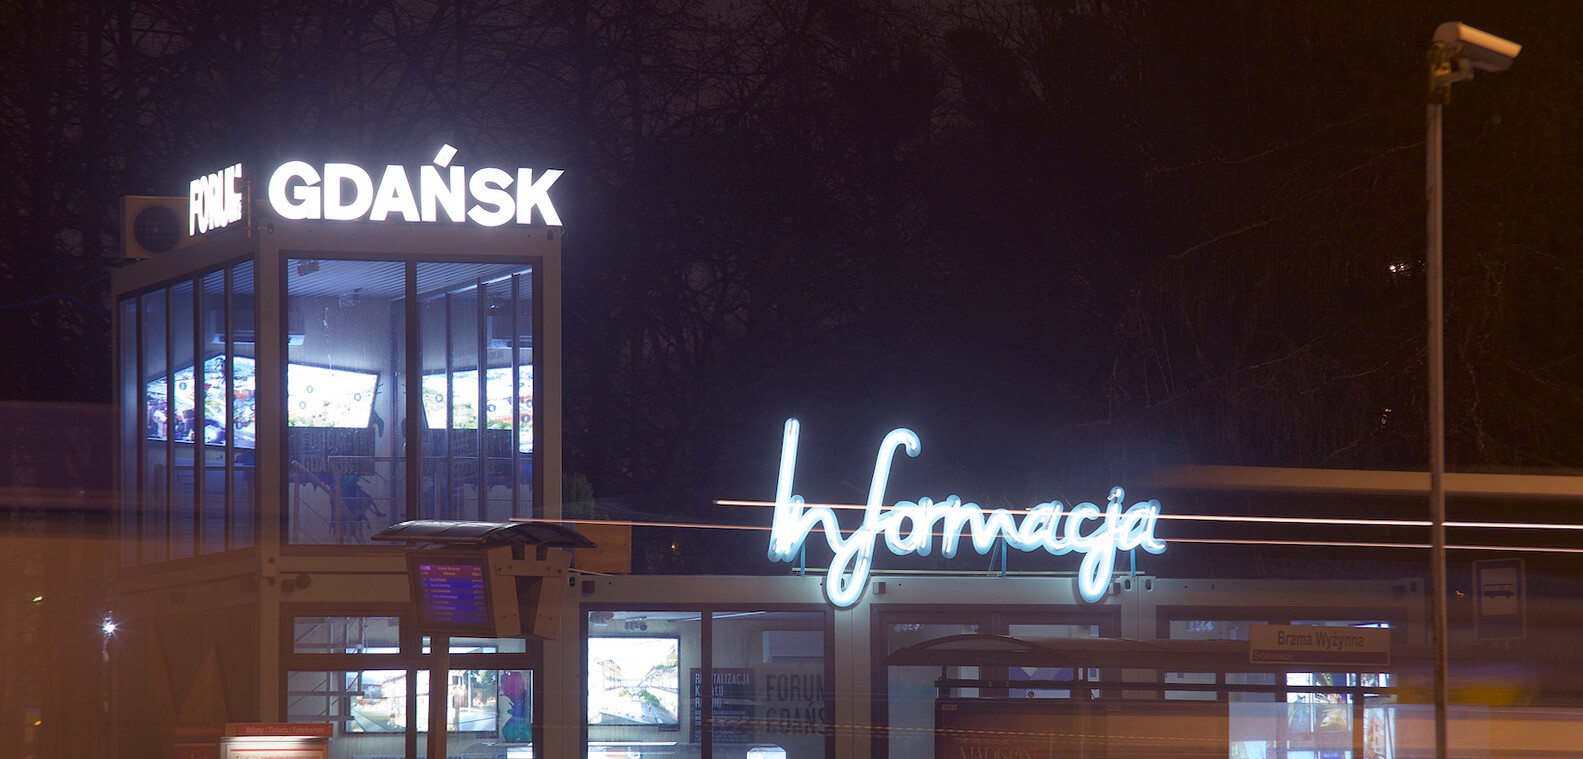 Información del foro de Gdansk - Foro de Gdansk - señalización informativa hecha con carteles de neón, montados en un marco, colocados sobre la entrada